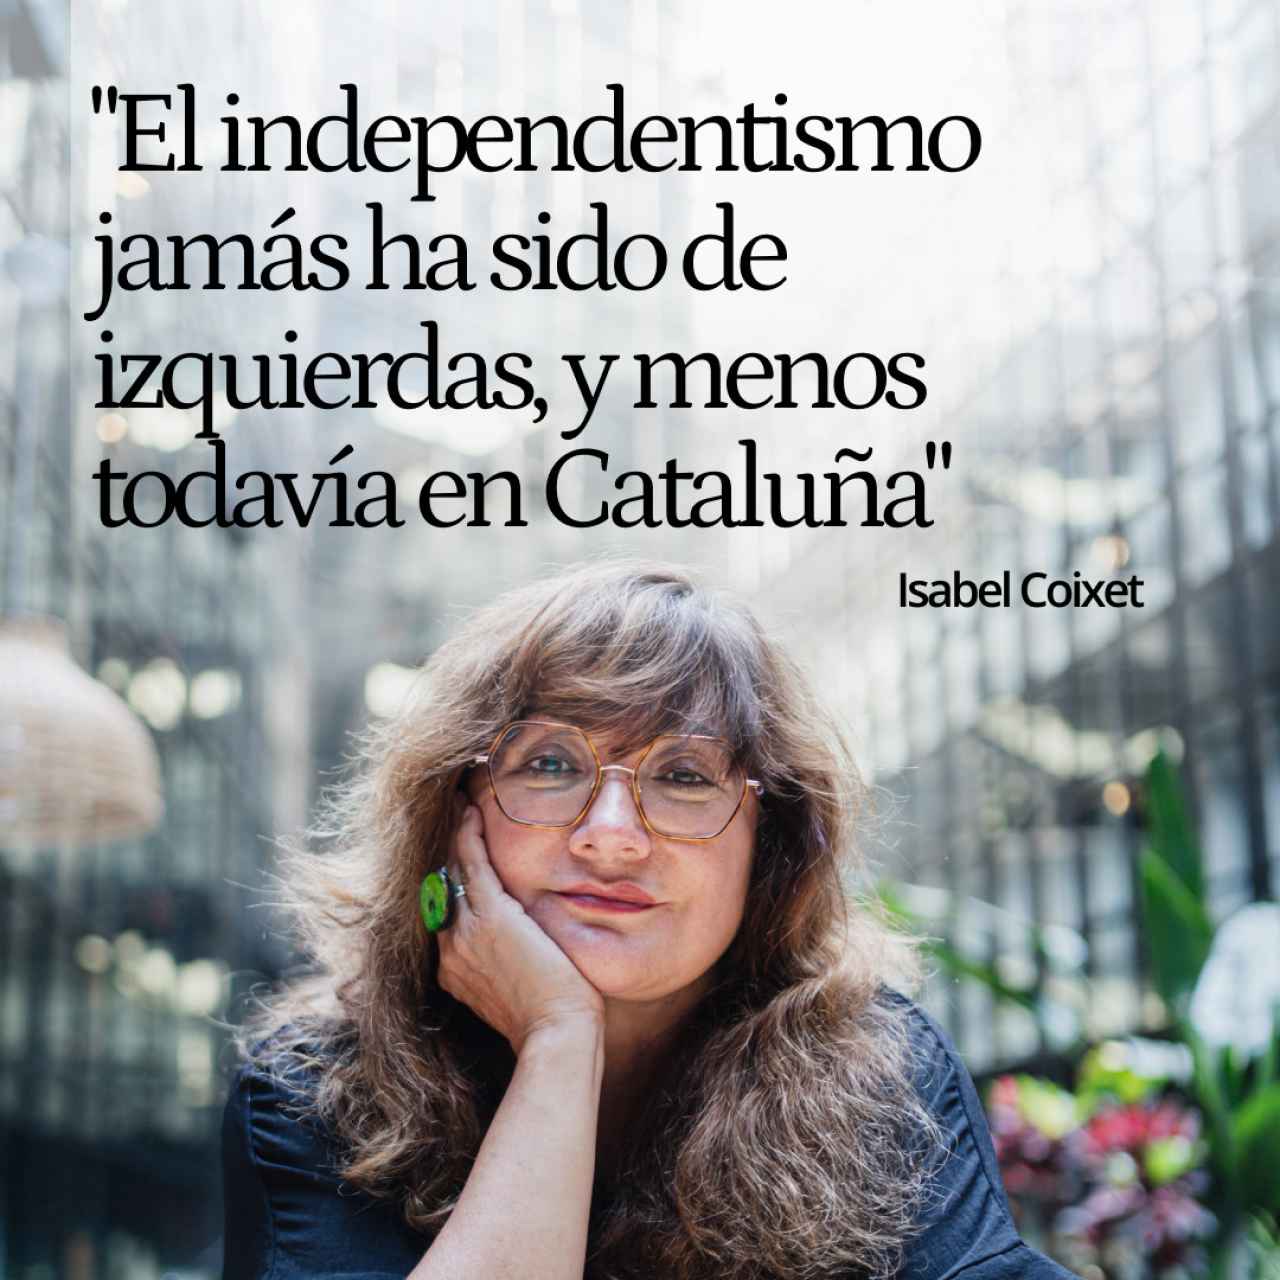 Isabel Coixet: "Jamás el independentismo ha sido de izquierdas, y menos todavía en Cataluña"